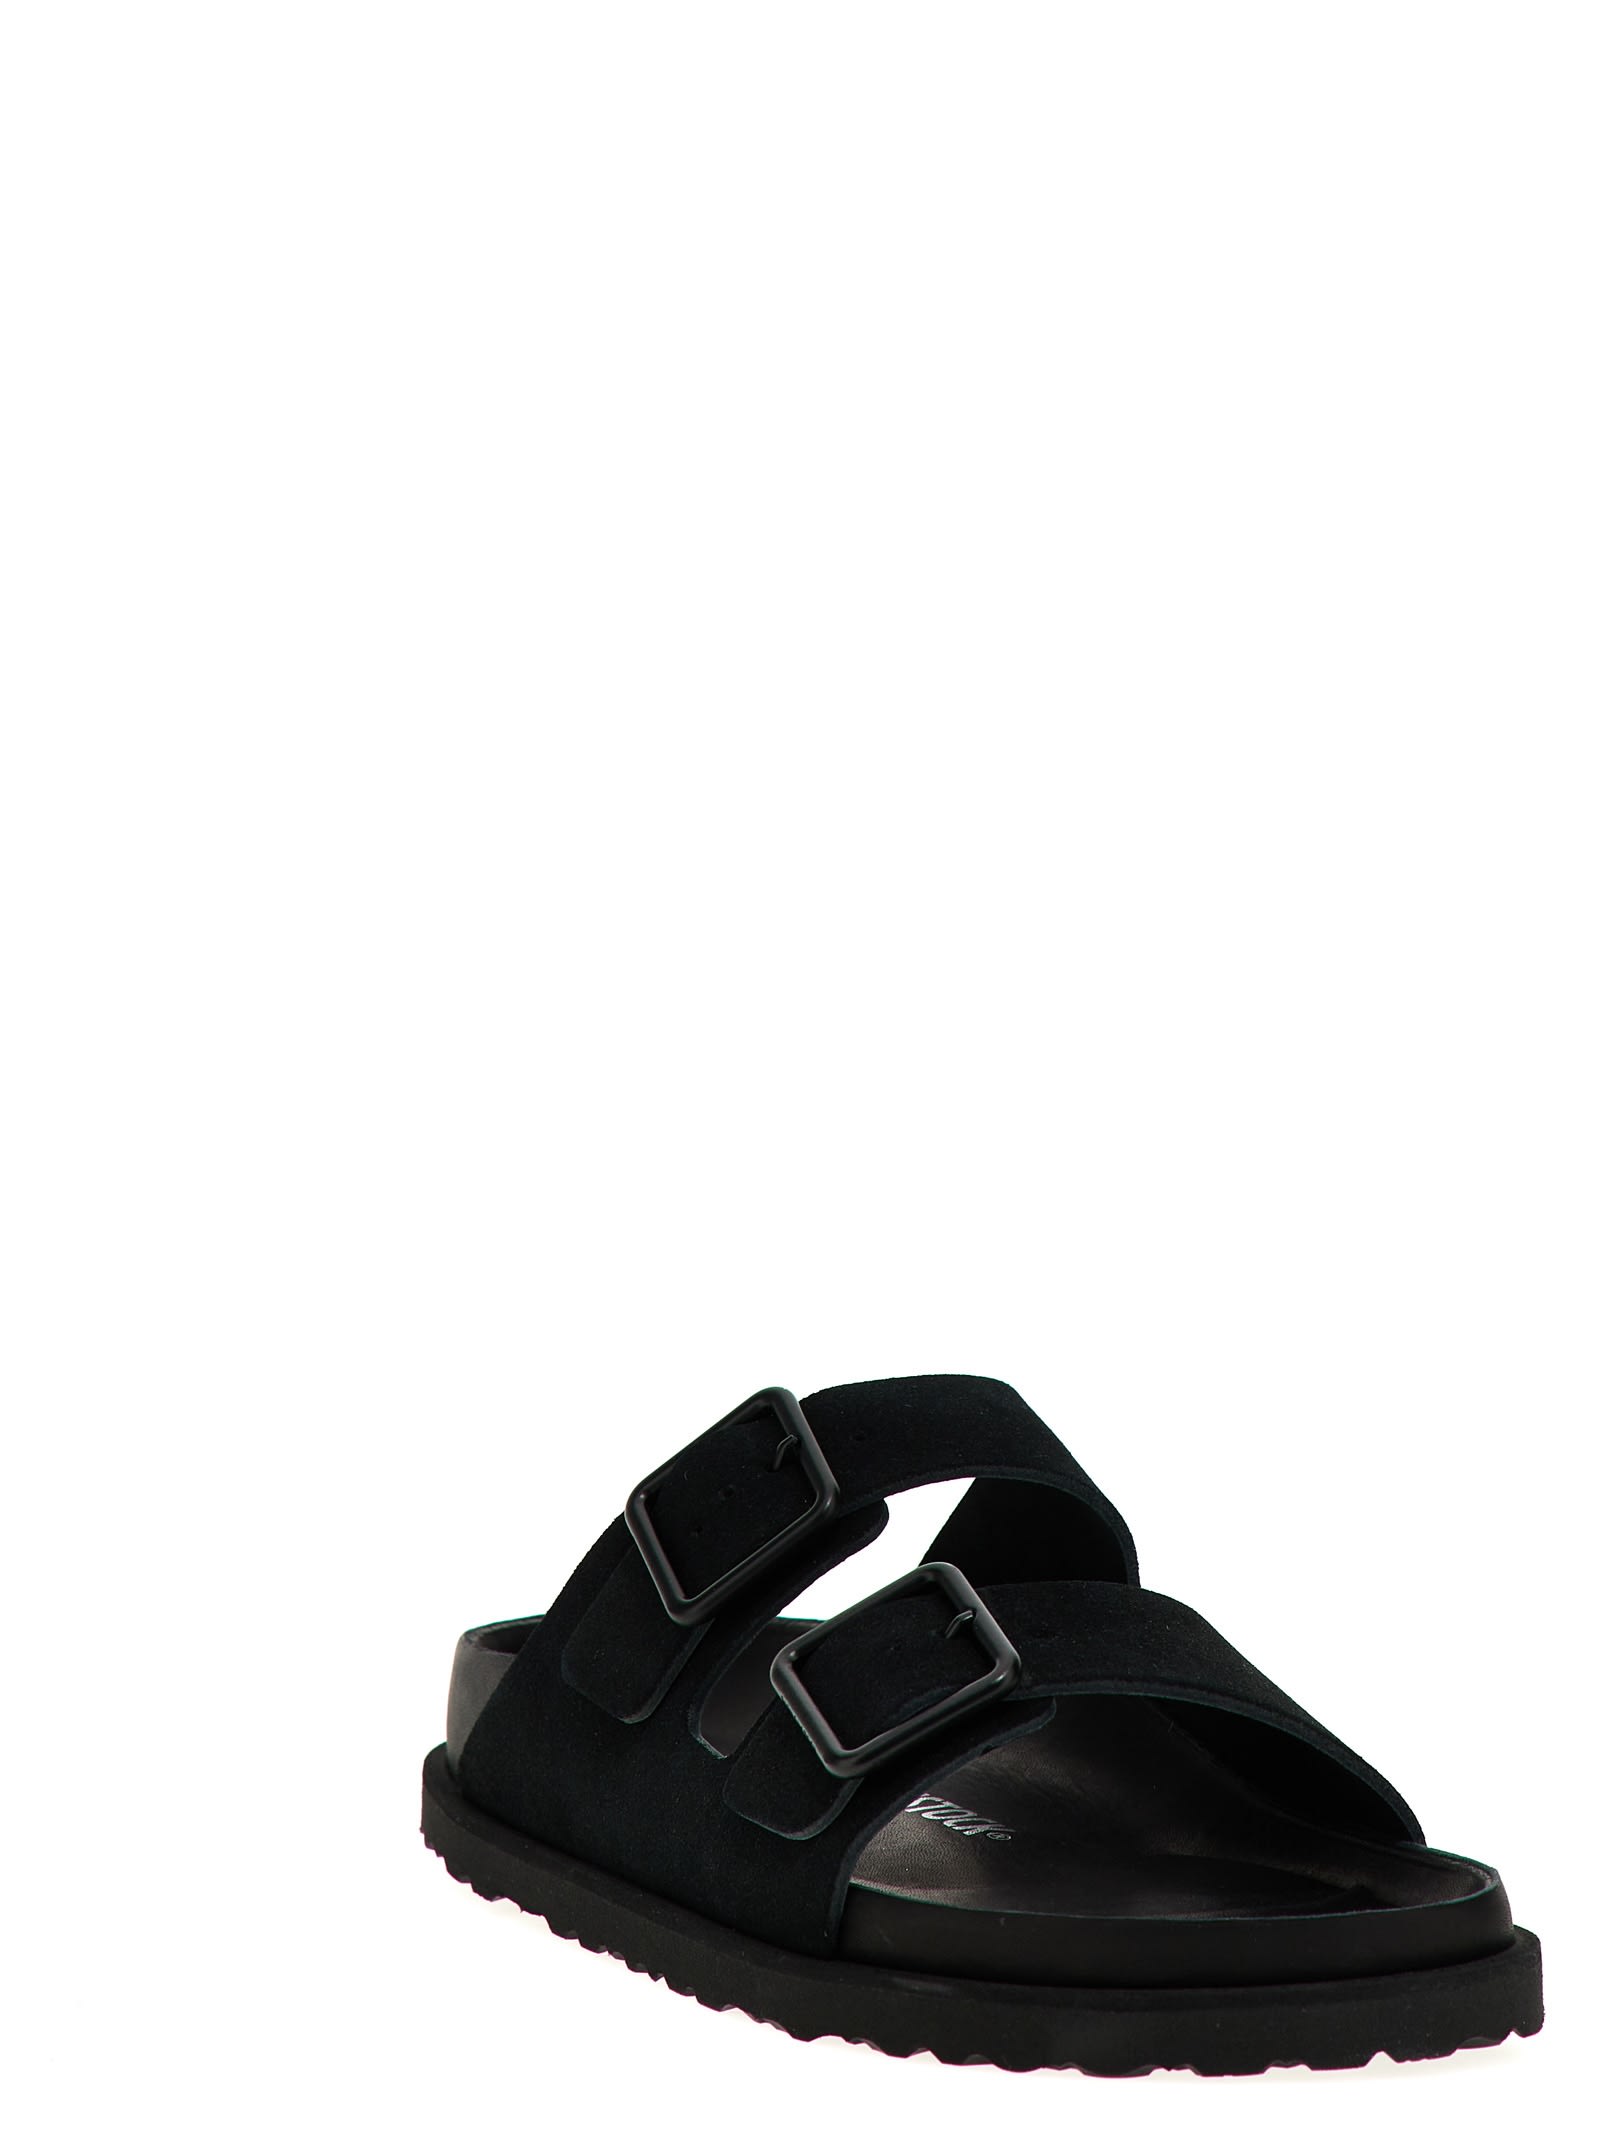 Shop Birkenstock Arizona Avantgarde Sandals In Black